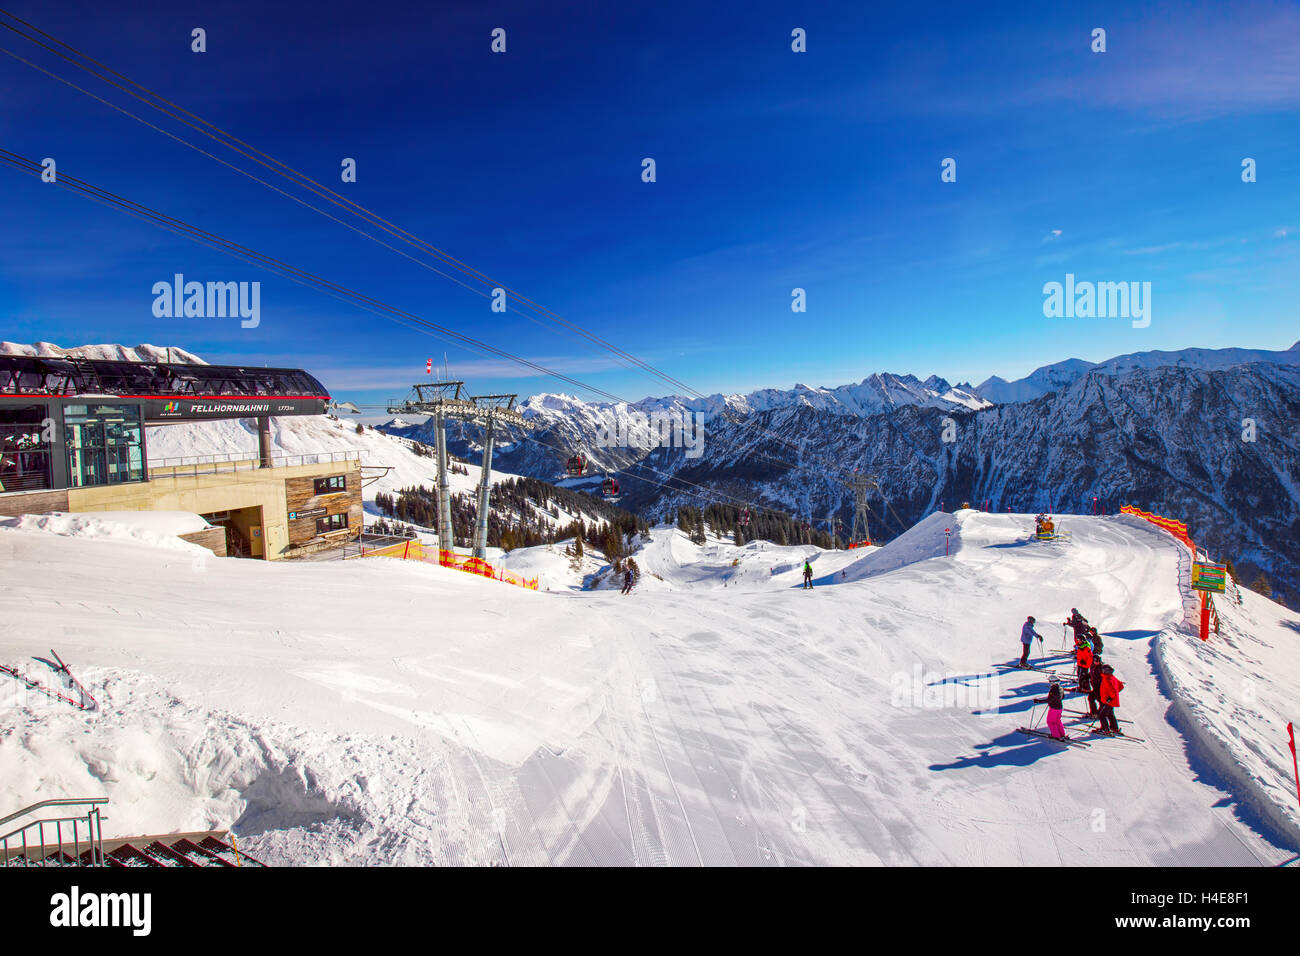 Vista di piste da sci e seggiovie sulla sommità del Fellhorn Ski Resort, Oberstdorf, Alpi Bavaresi, Germania Foto Stock